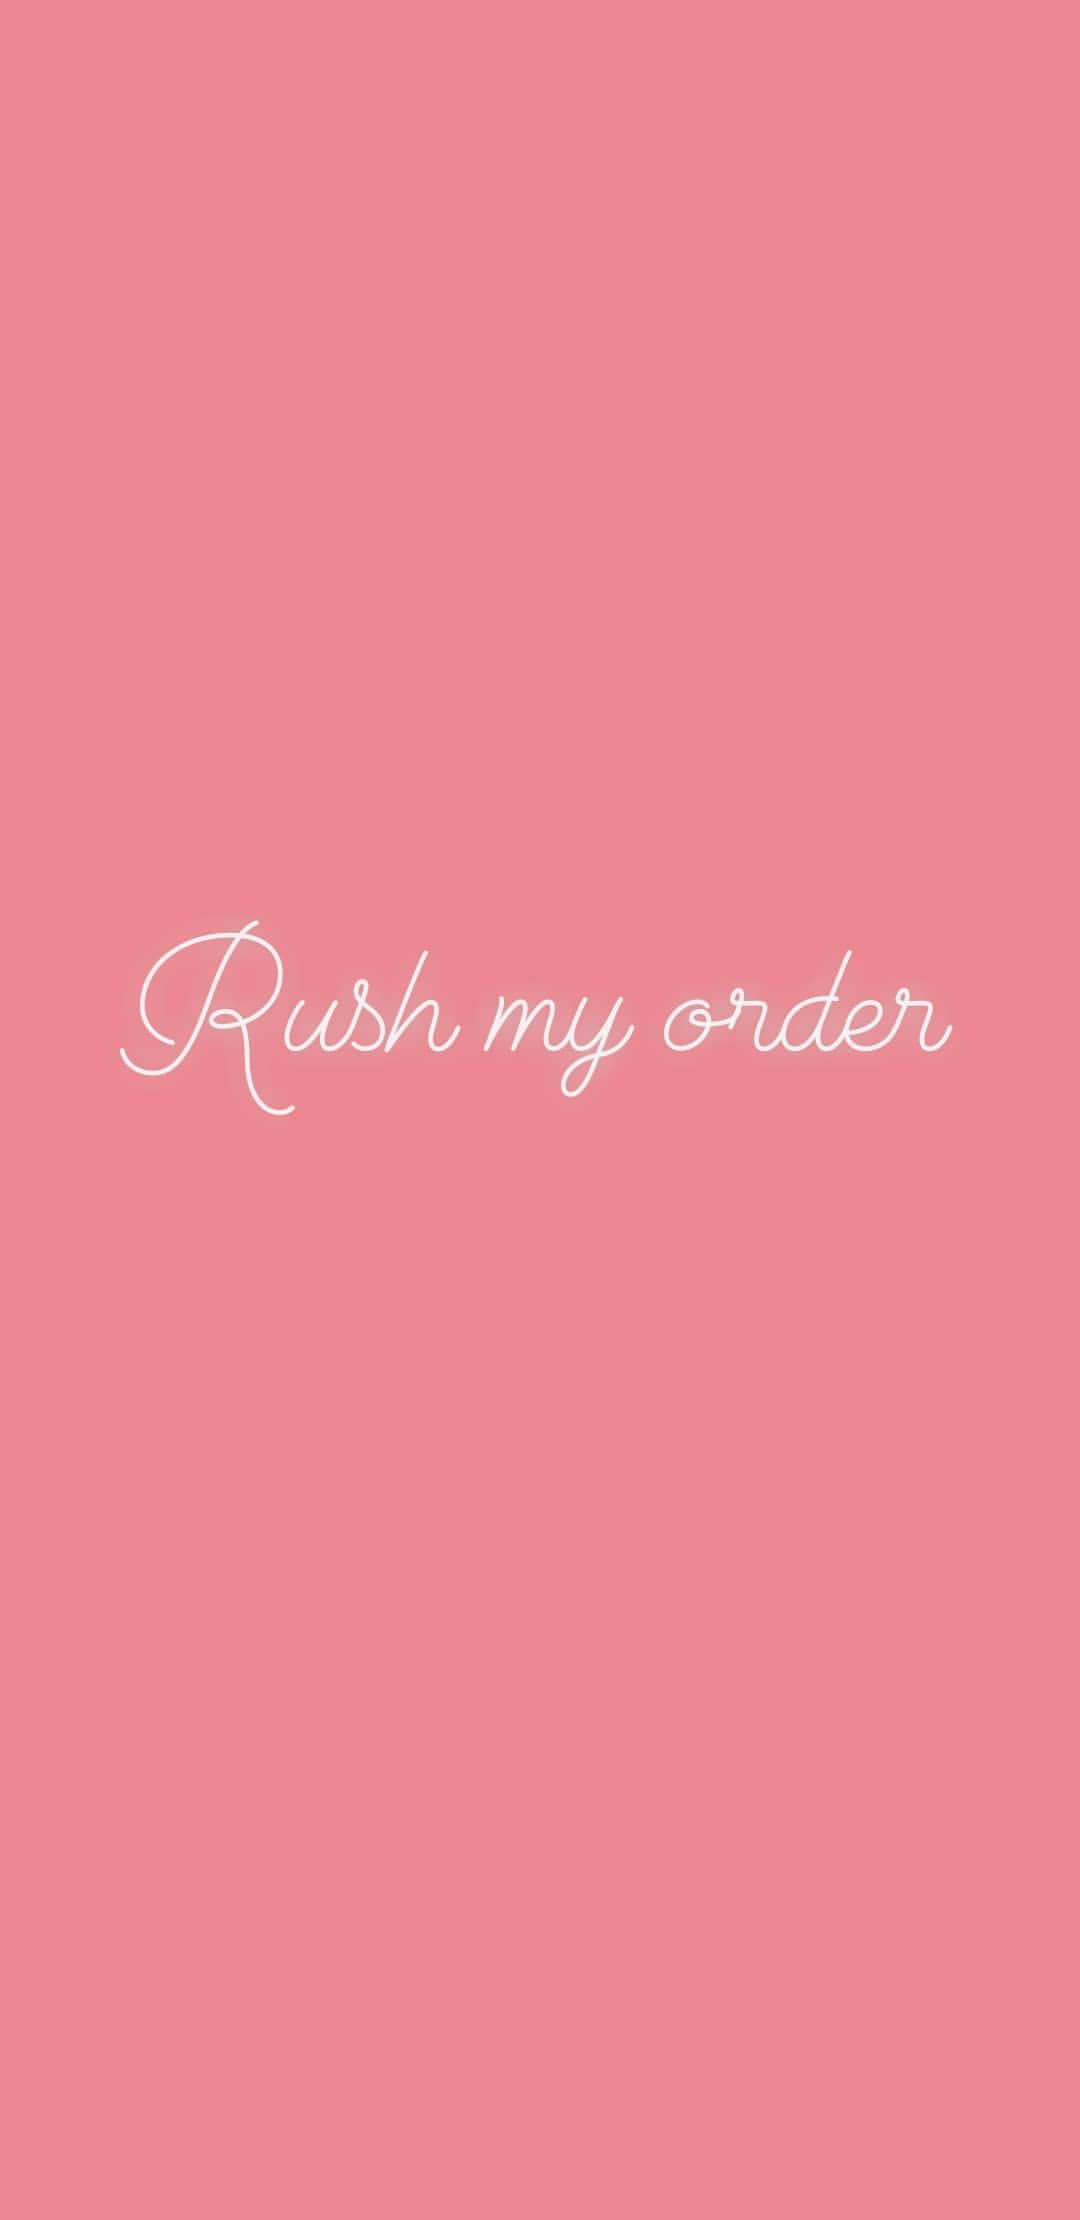 Image of Rush my order